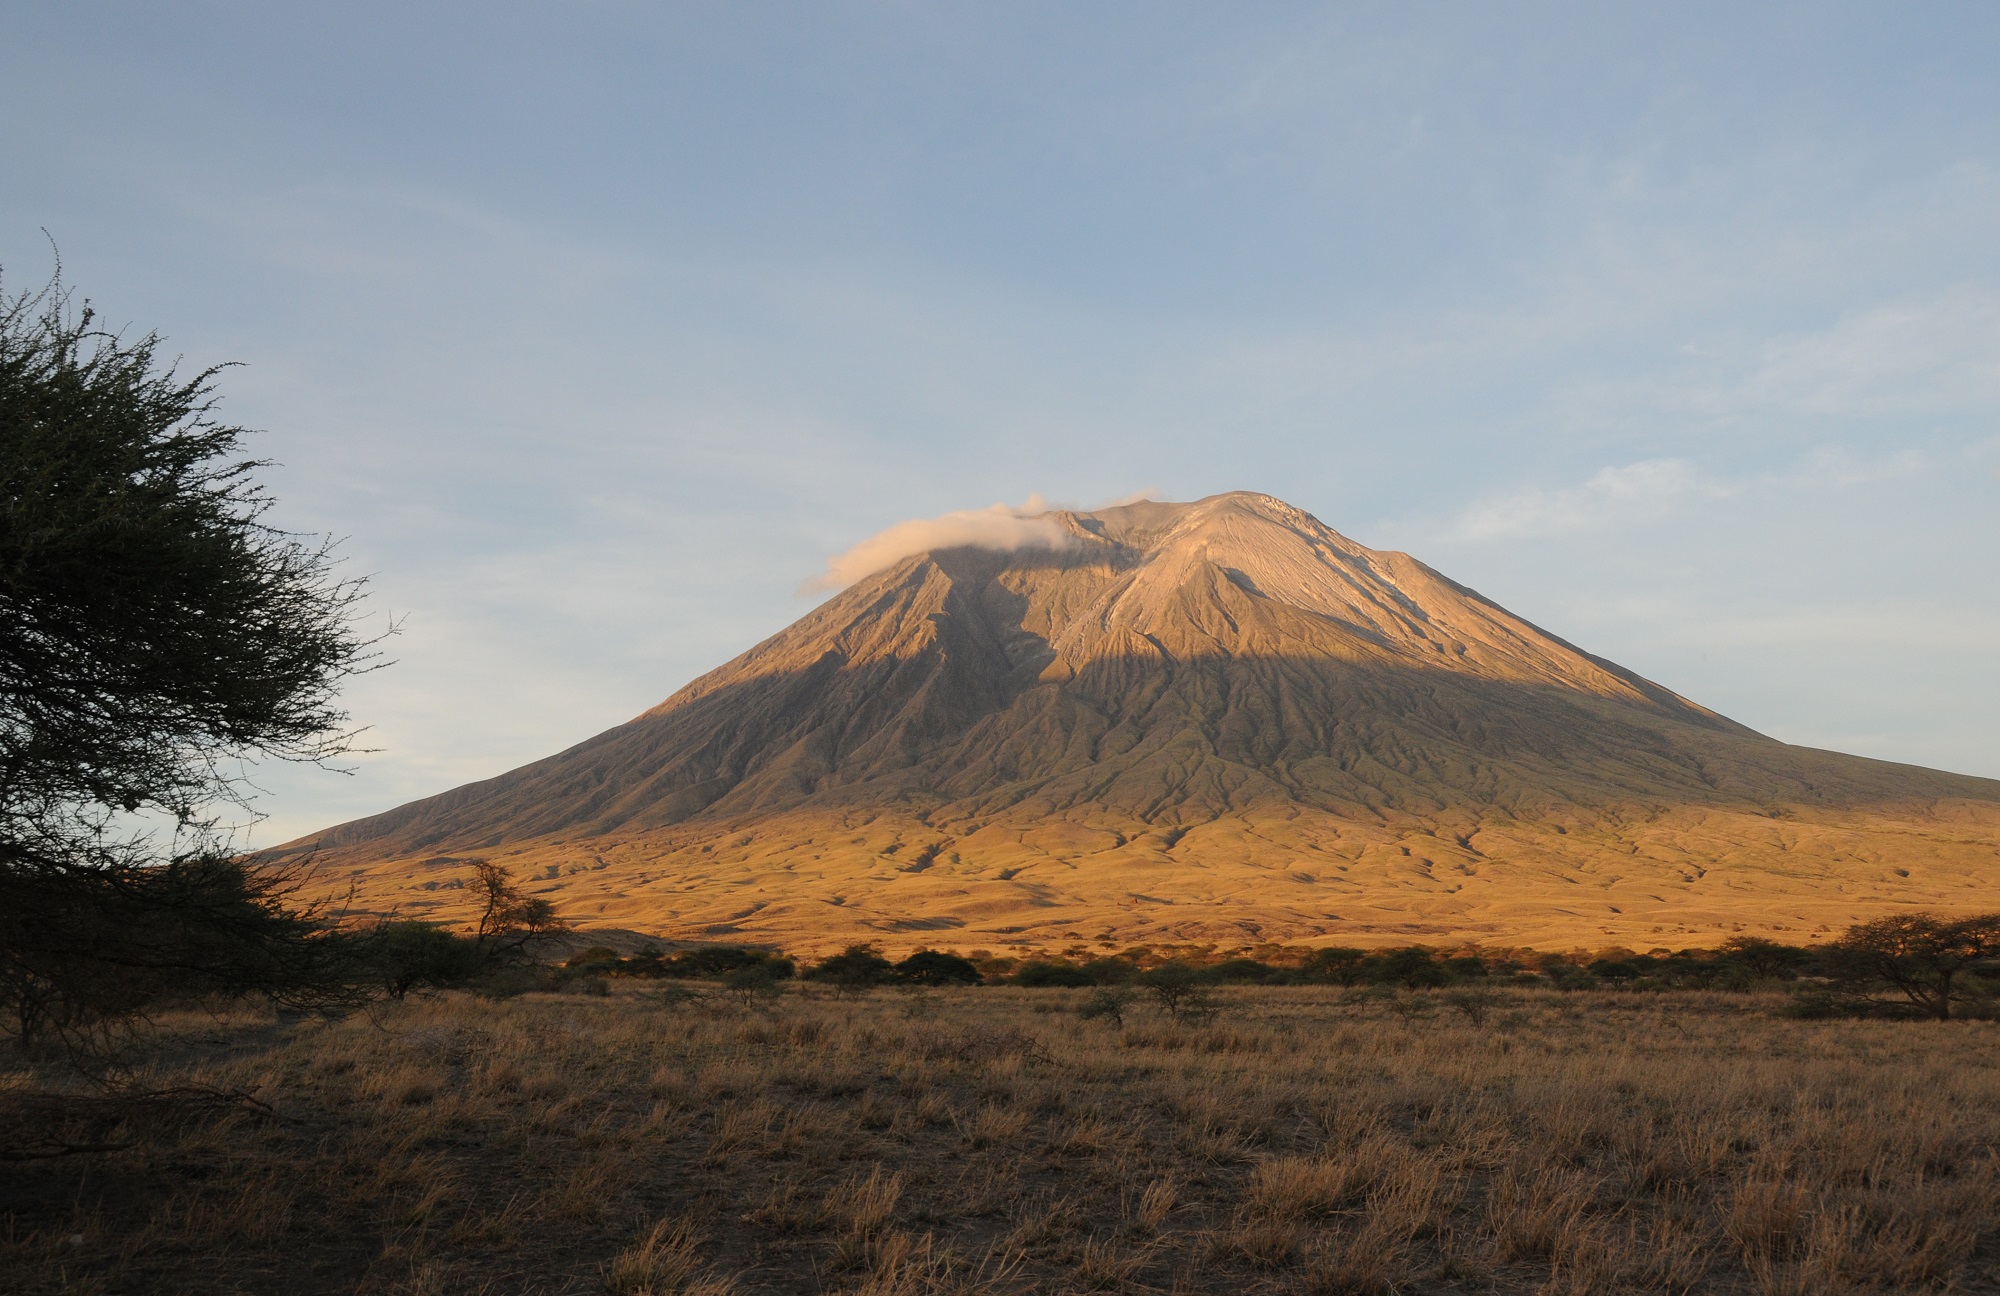 il vulcano sacro dei masai all'alba...